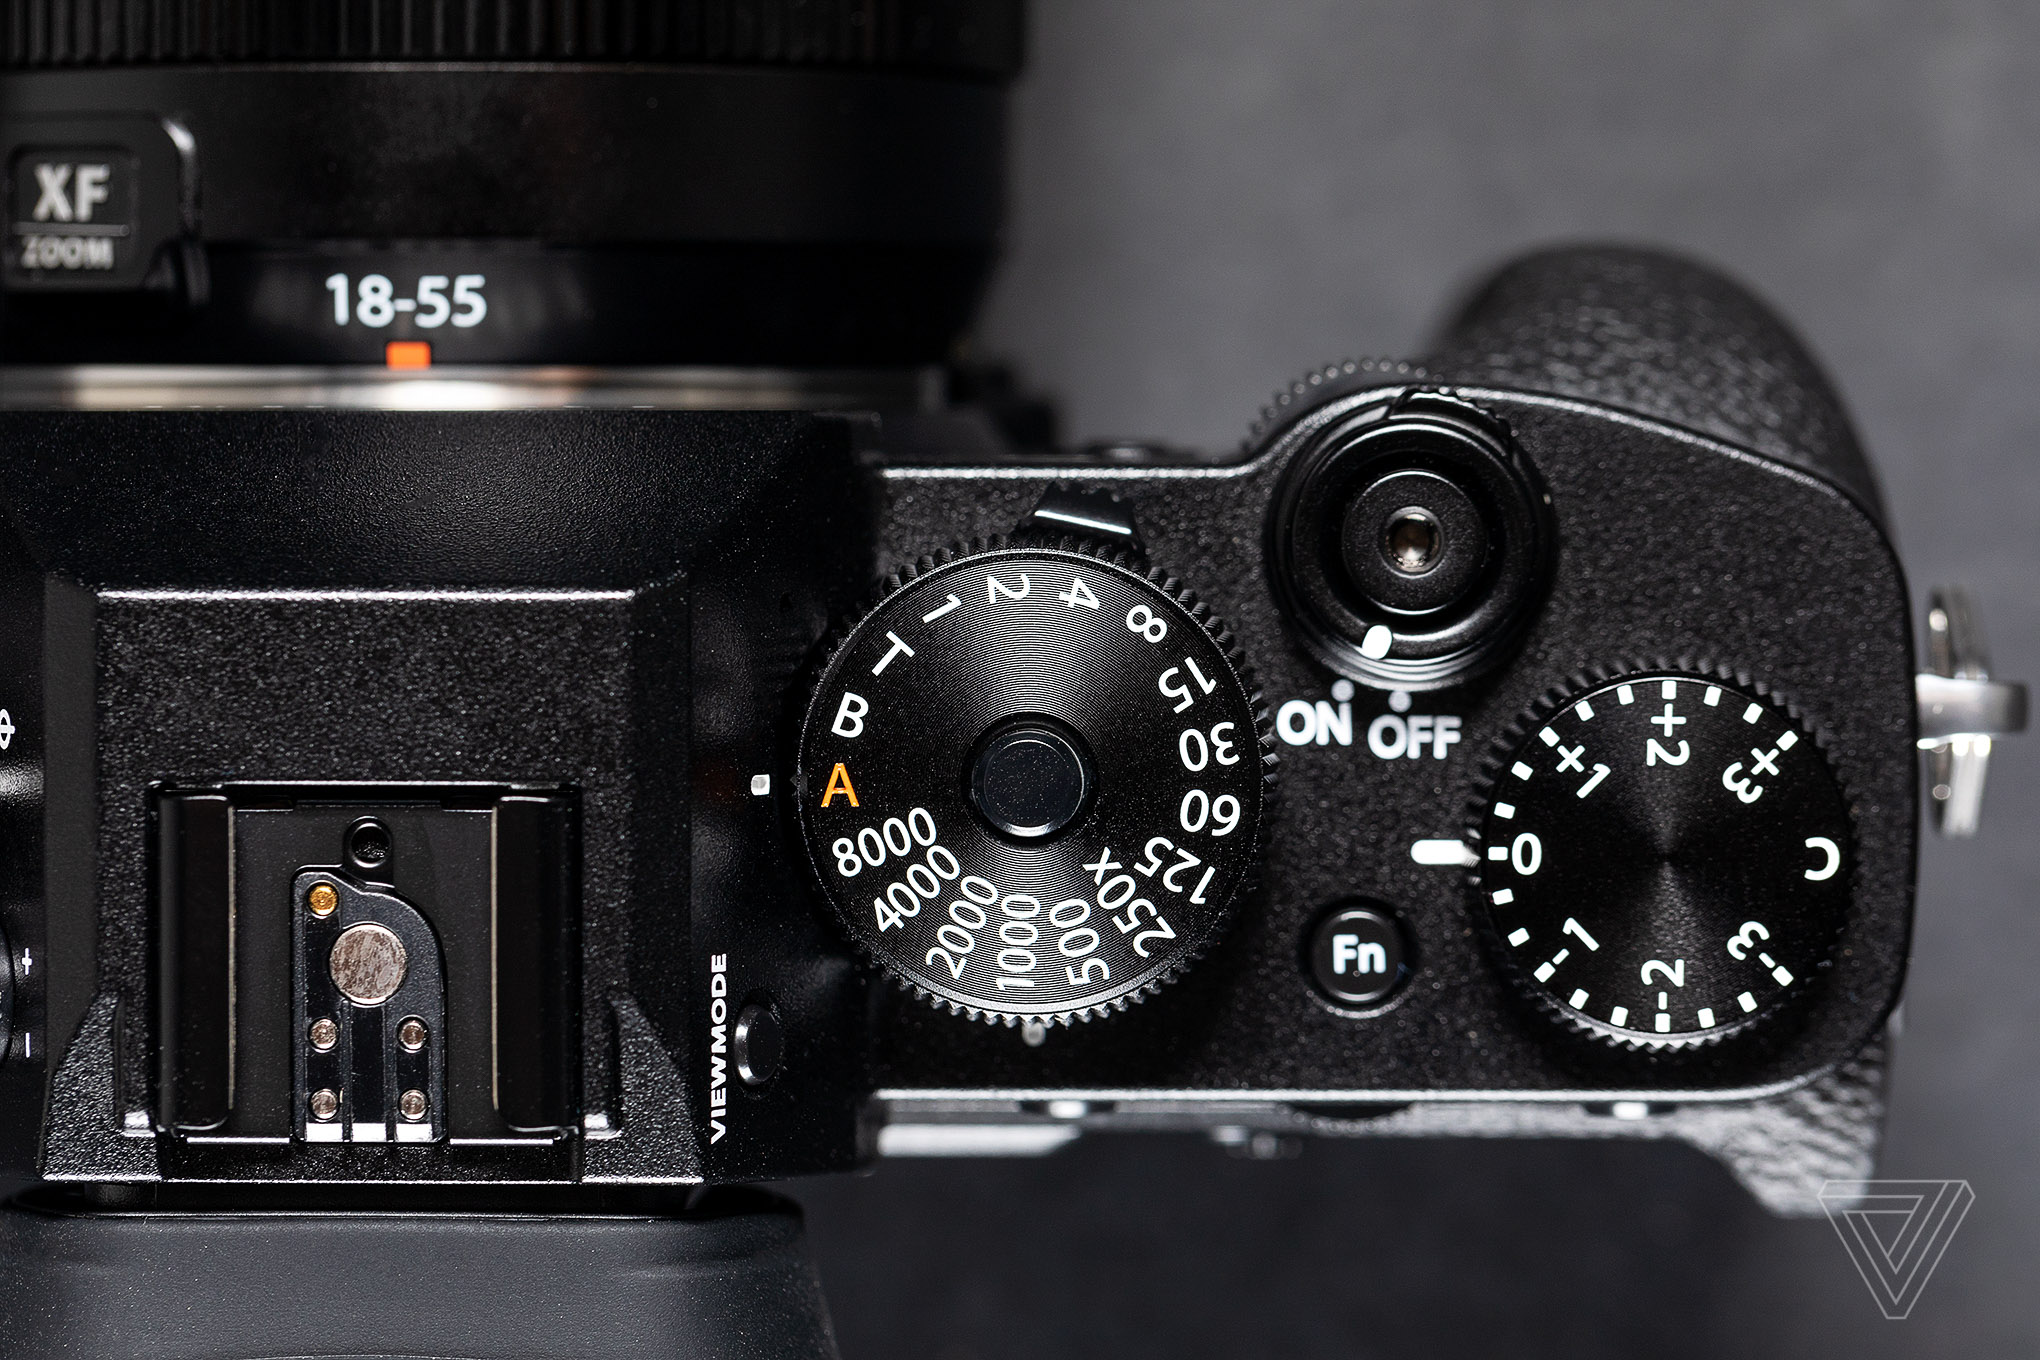 Fujifilm ra mắt X-T3: Nhiều nâng cấp bên trong, ngoại hình như X-T2